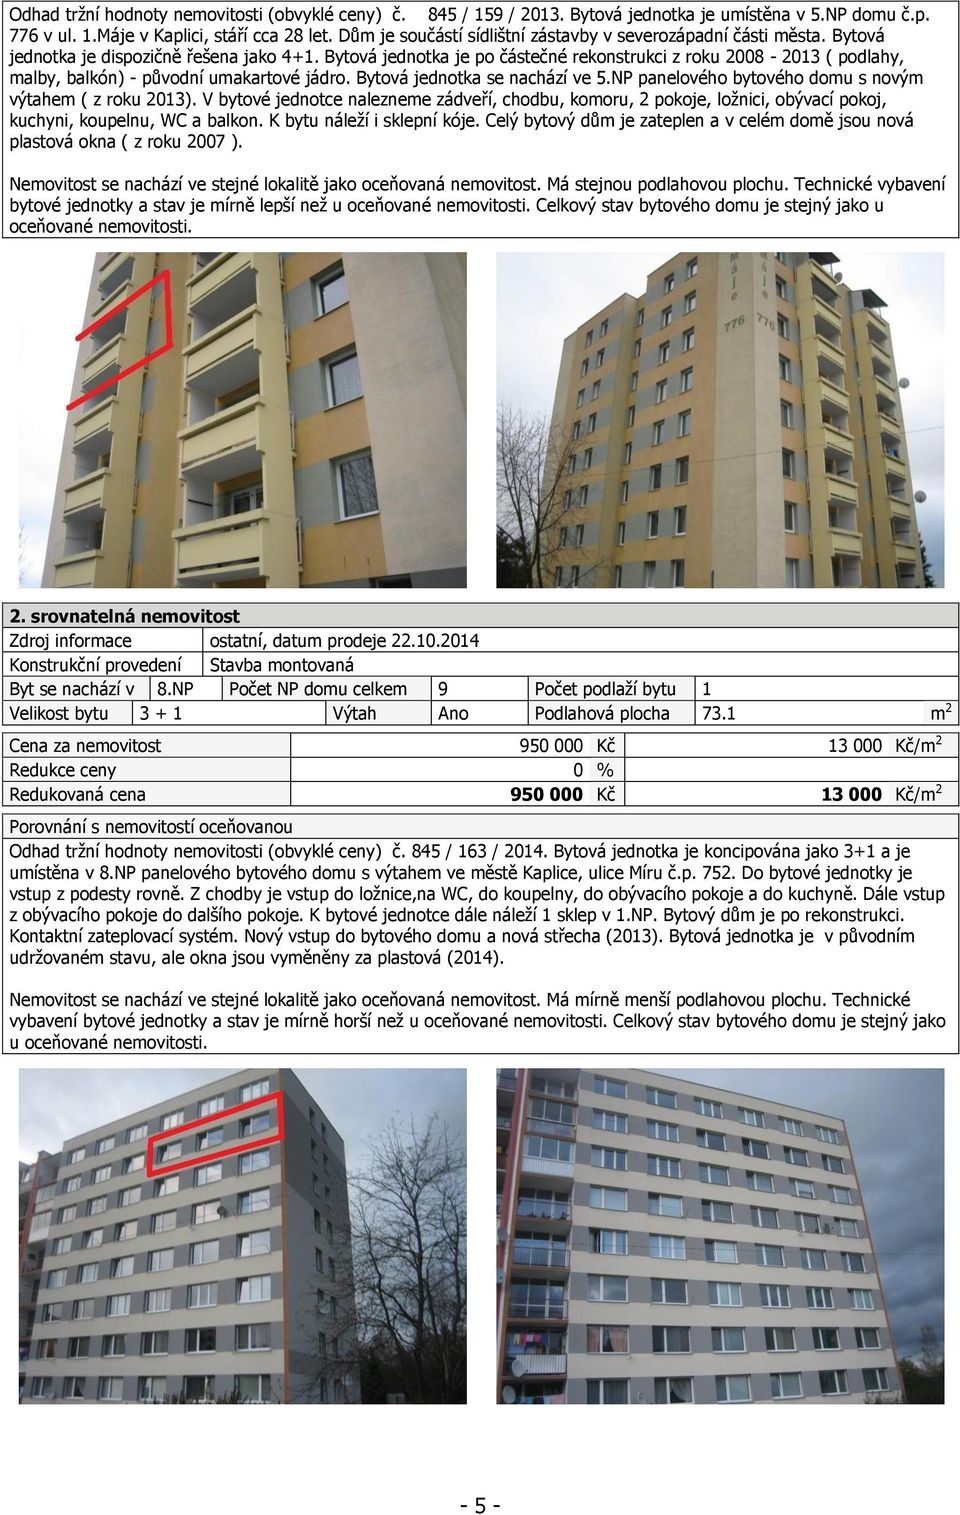 Bytová jednotka je po částečné rekonstrukci z roku 2008-2013 ( podlahy, malby, balkón) - původní umakartové jádro. Bytová jednotka se nachází ve 5.